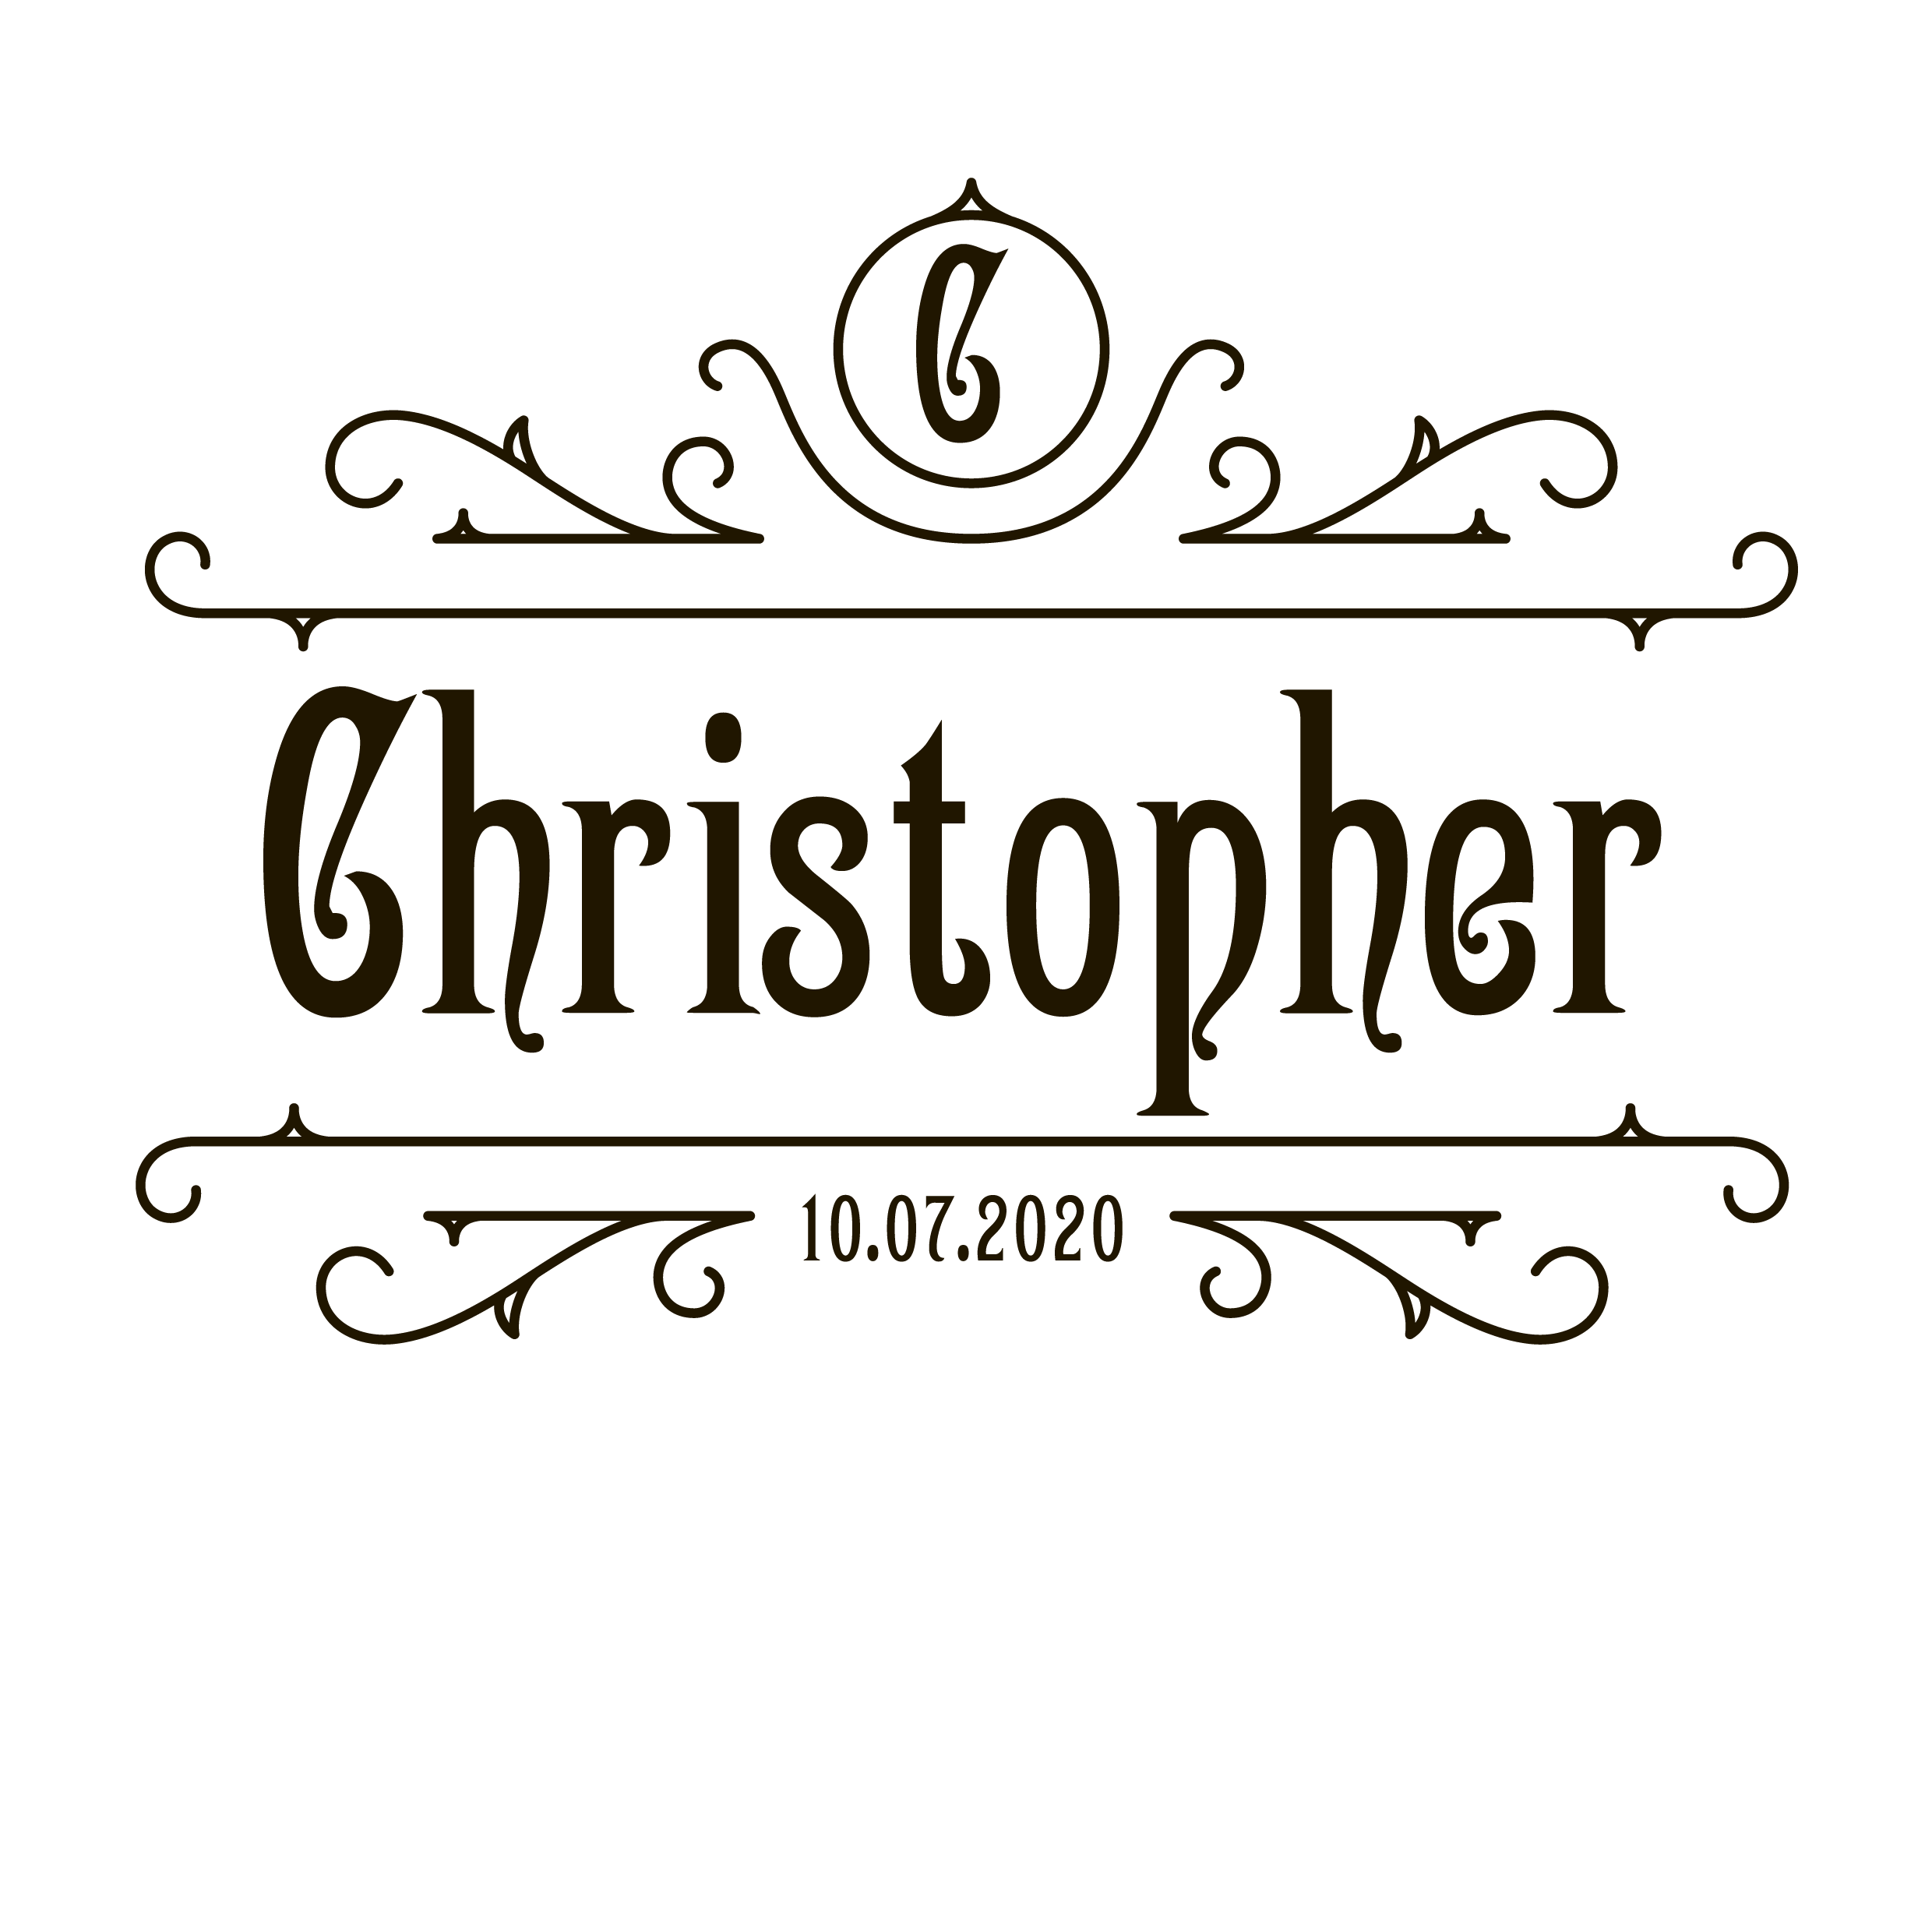 christofer